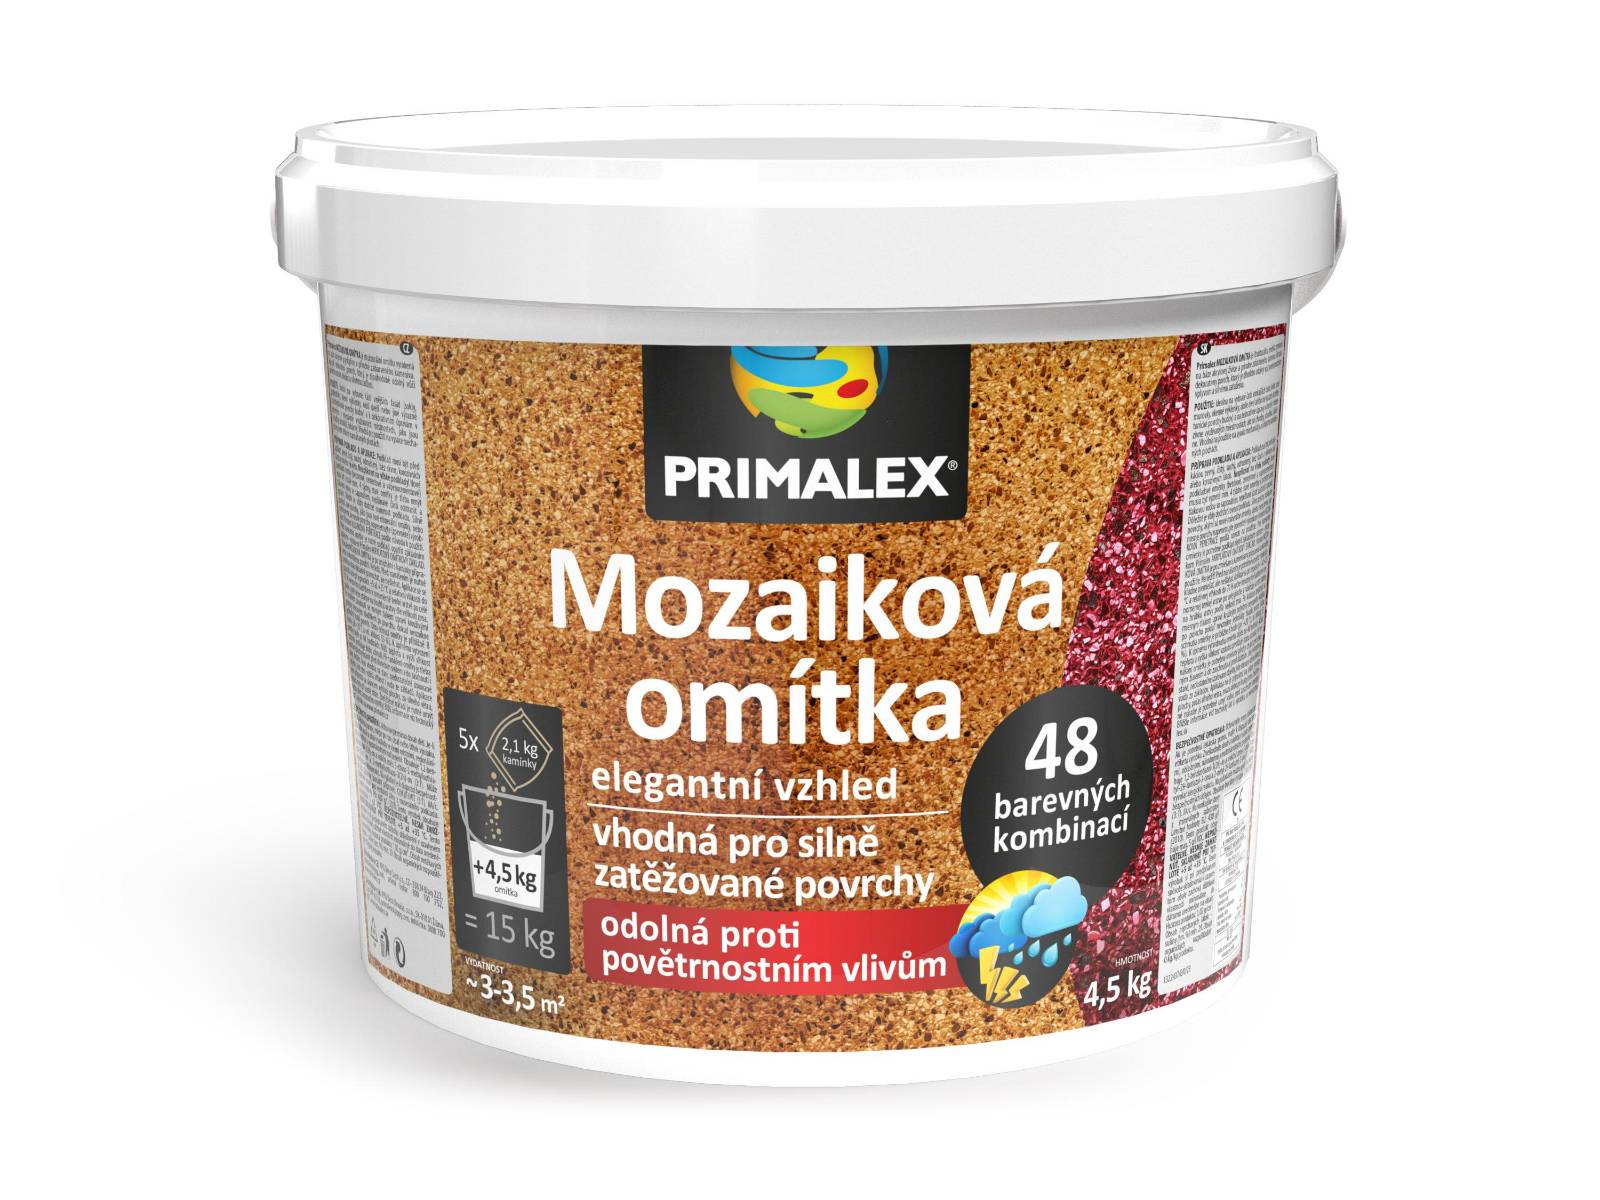 PRIMALEX Mozaiková omietka 15kg (4.5 kg spojivo + 5 x 2.1kg kameniva) mix farieb B+I+F+F+F